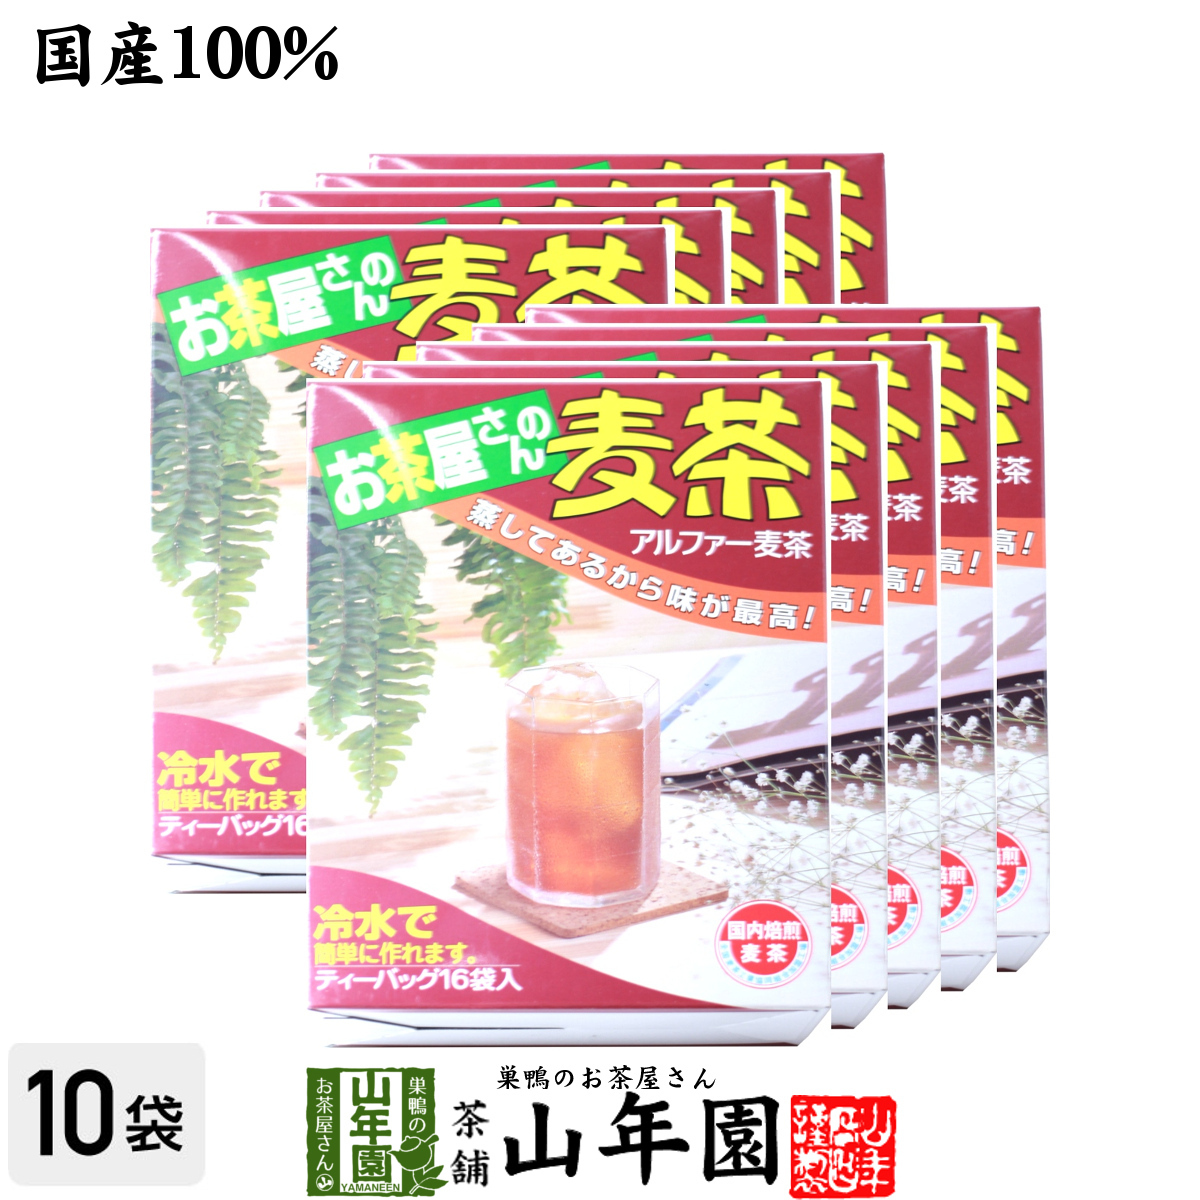 健康茶 むぎ茶 10g×16袋×10箱セット 国産 麦茶 ムギ茶 ミネラル やさしい おいしい 送料無料